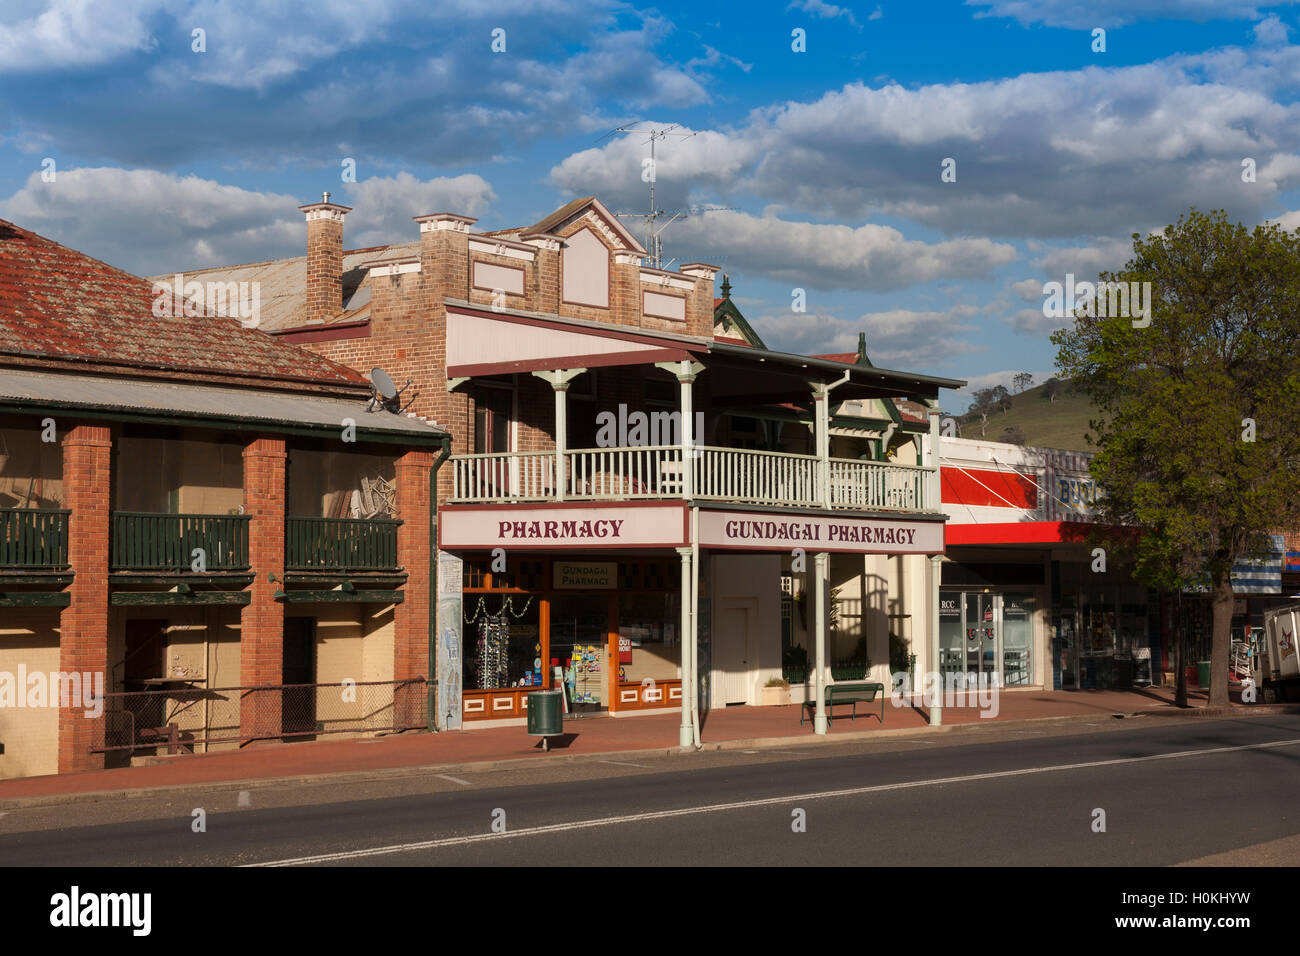 Le quartier historique de Gundagai Pharmacy 114 Sheridan Street, Gundagai NSW, Australie Banque D'Images